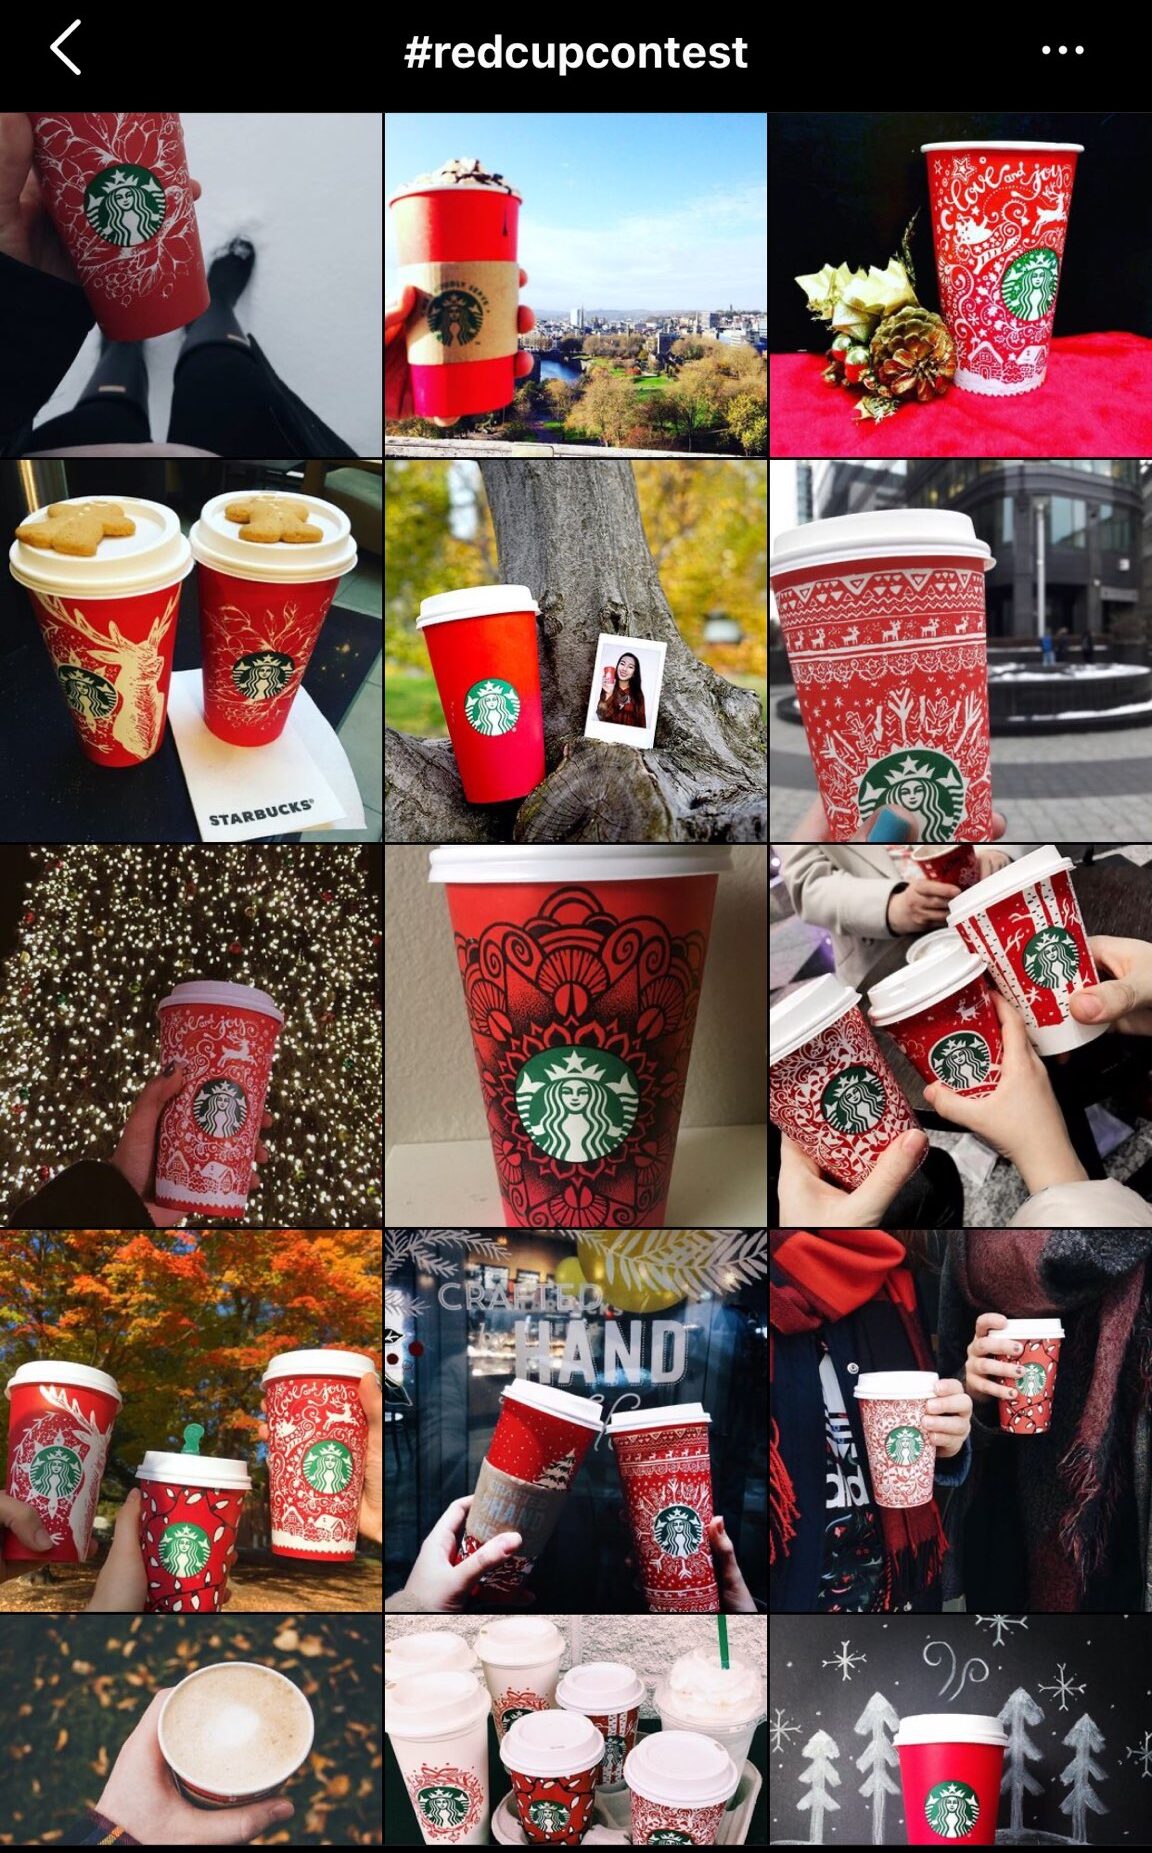 Chiến lược kinh doanh marketing redcupcontest của Starbucks